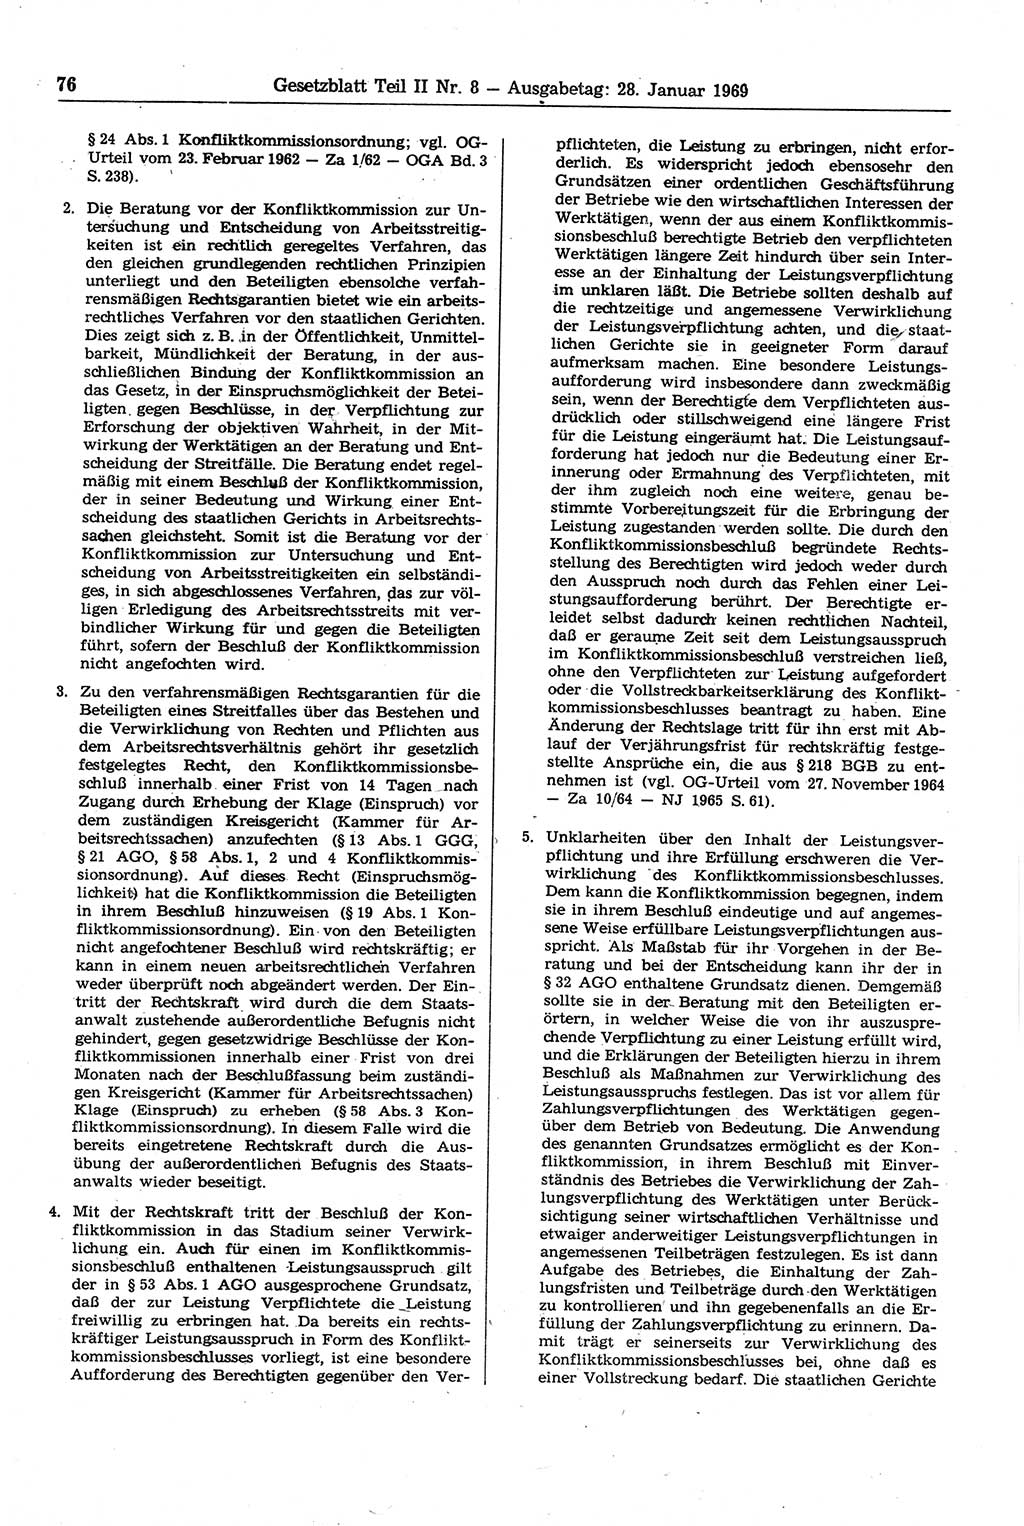 Gesetzblatt (GBl.) der Deutschen Demokratischen Republik (DDR) Teil ⅠⅠ 1969, Seite 76 (GBl. DDR ⅠⅠ 1969, S. 76)